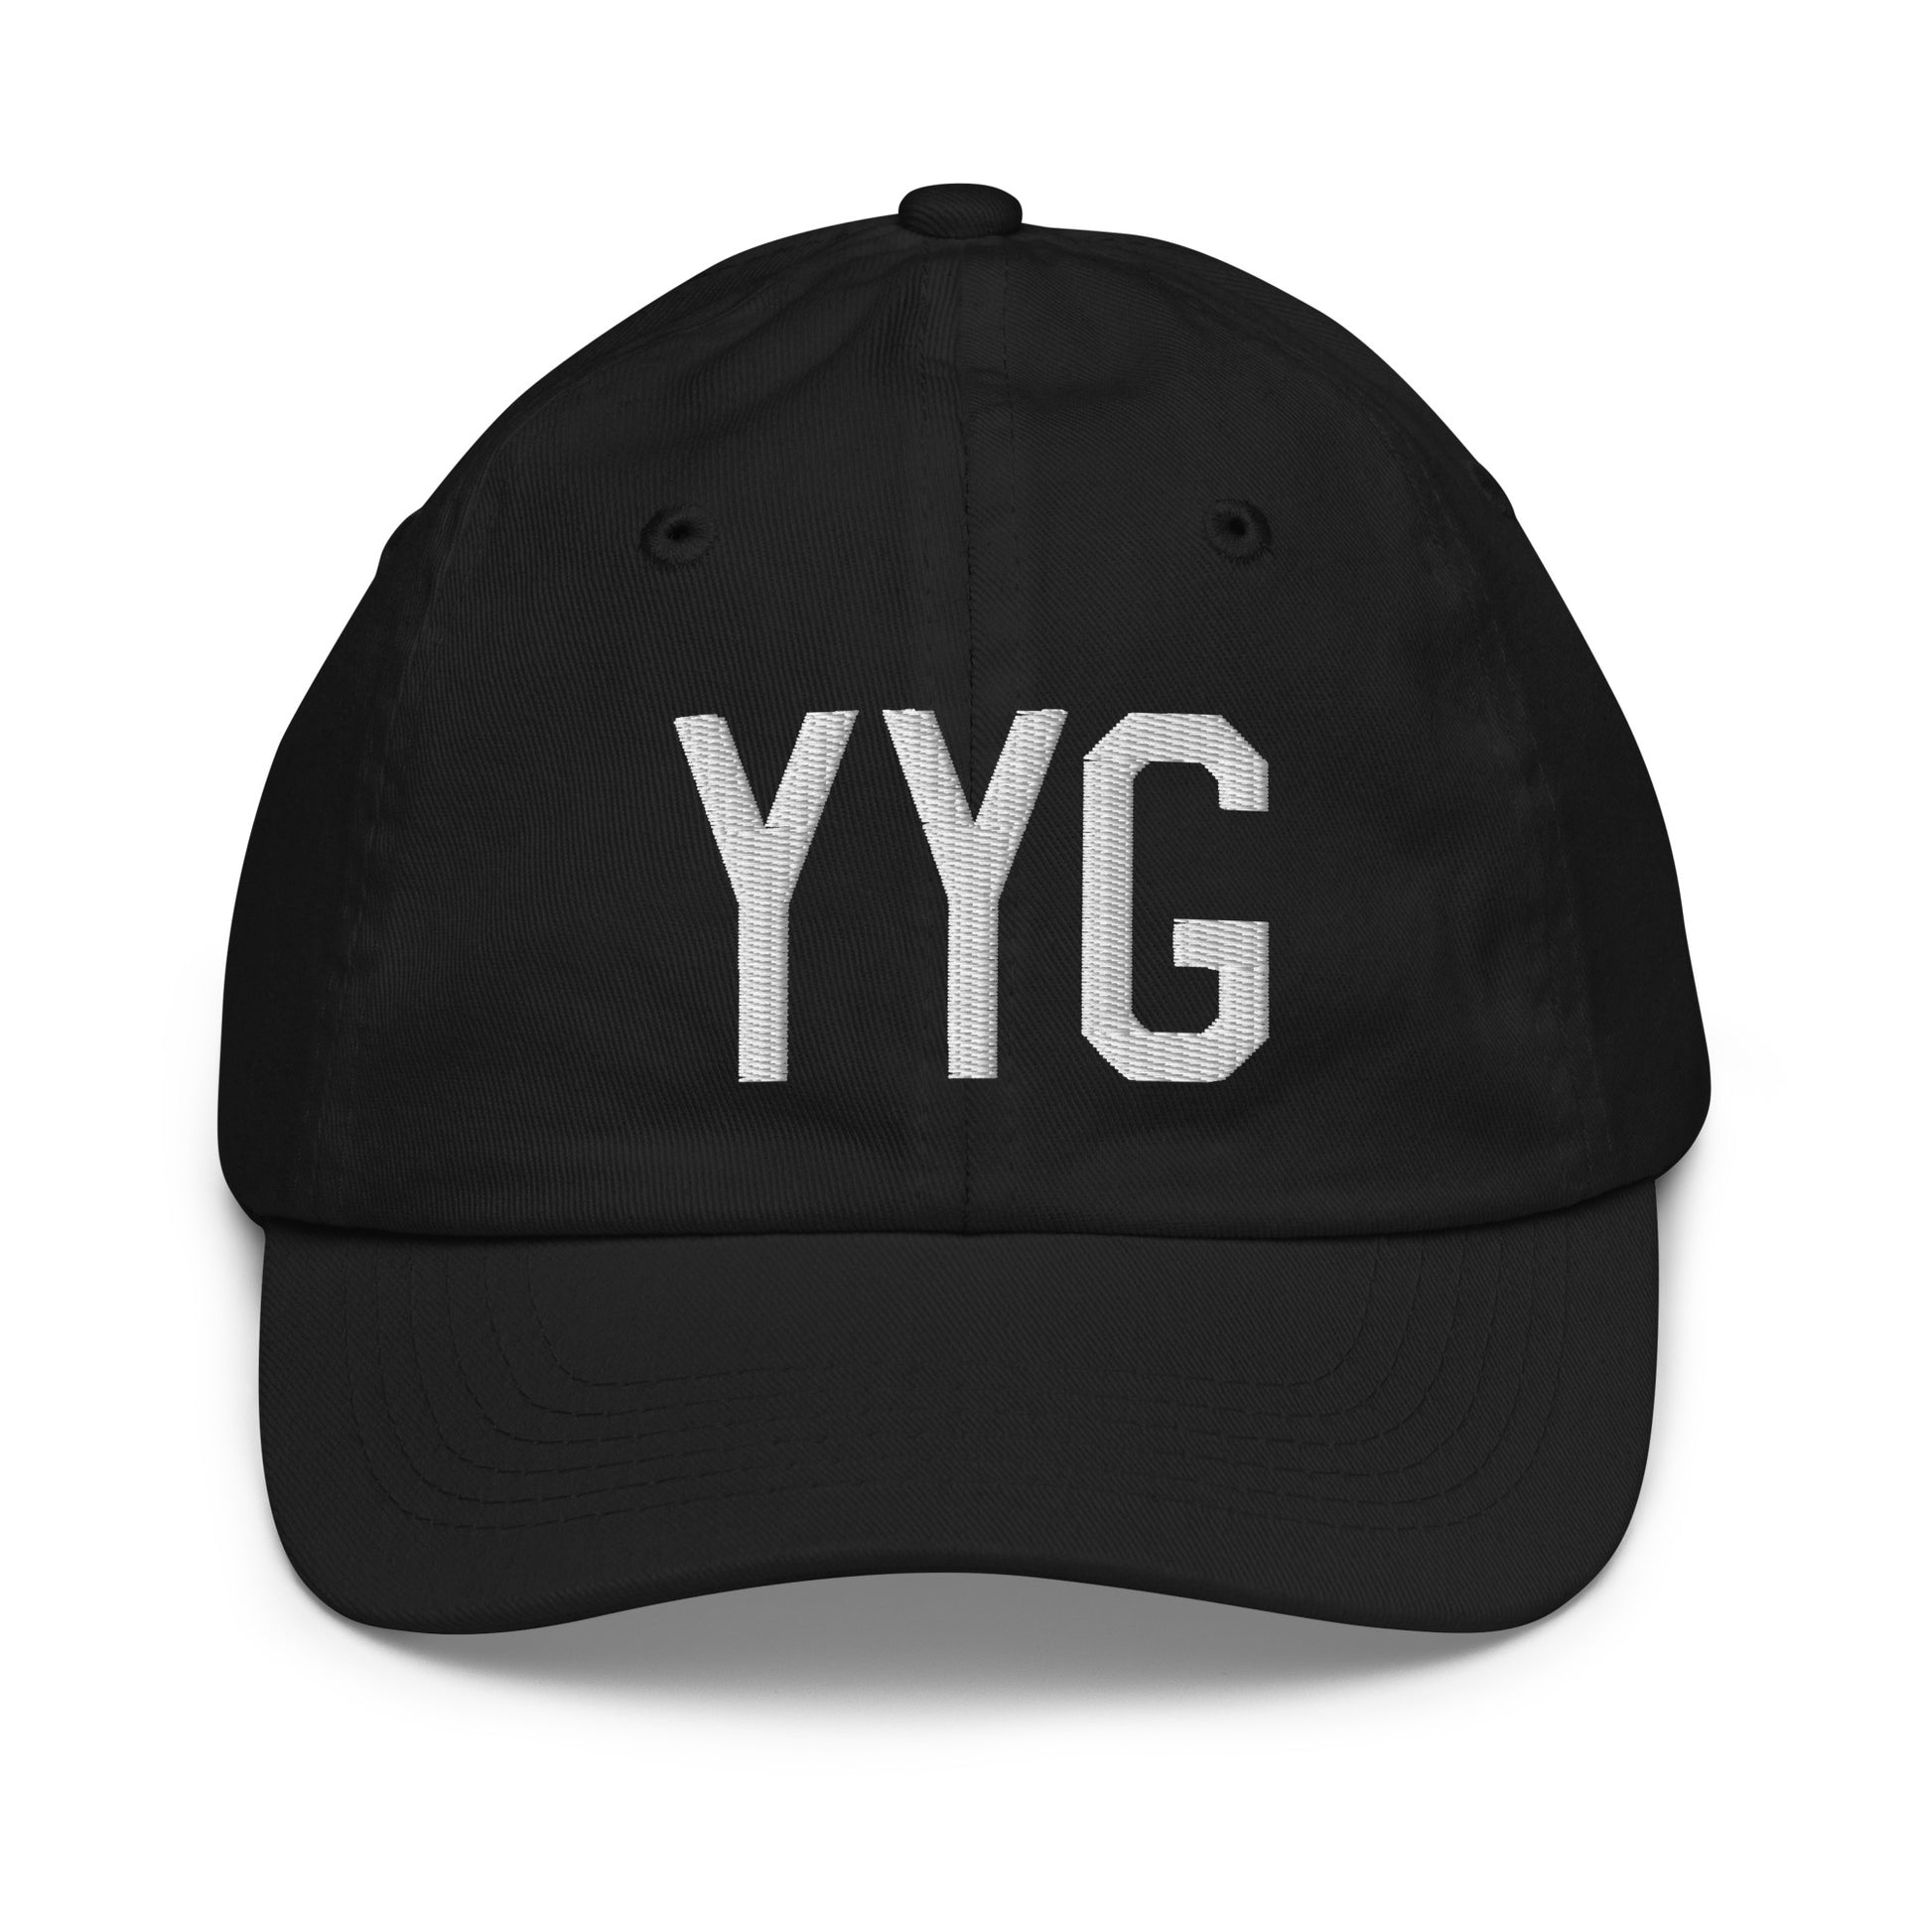 Airport Code Kid's Baseball Cap - White • YYG Charlottetown • YHM Designs - Image 11